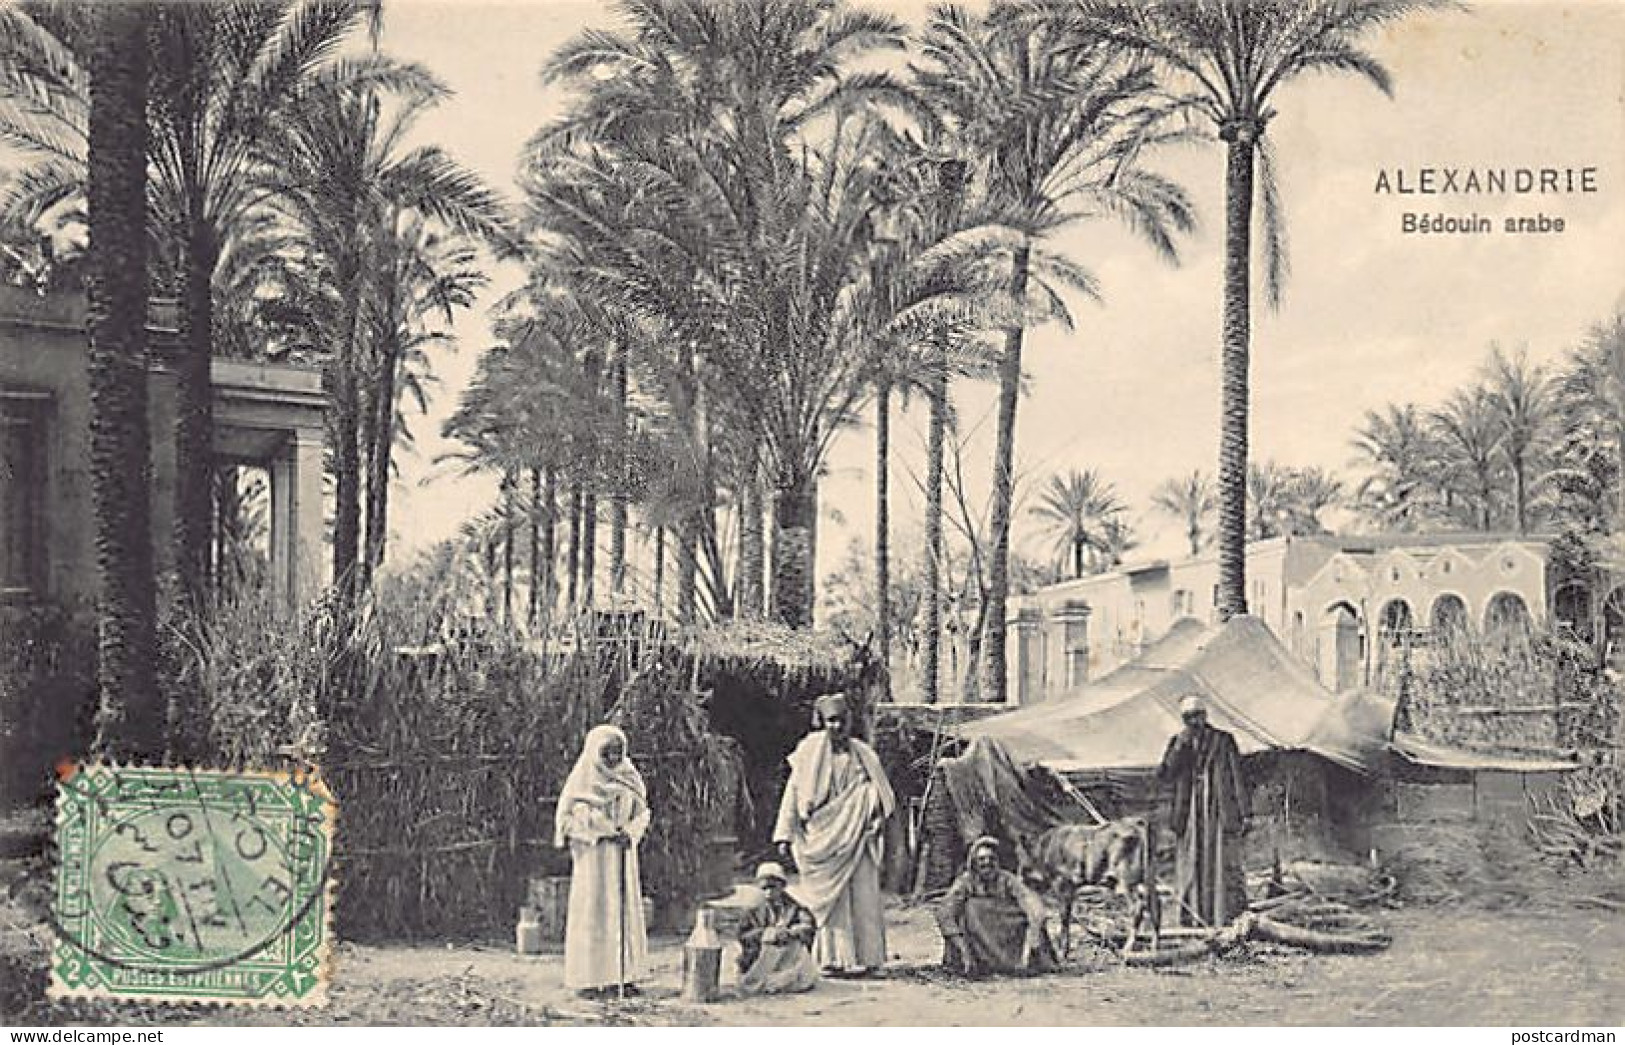 Egypt - ALEXANDRIA - Arab Bedouin - Publ. Dr. Trenkler Co. Ala. 36 - Alexandrië